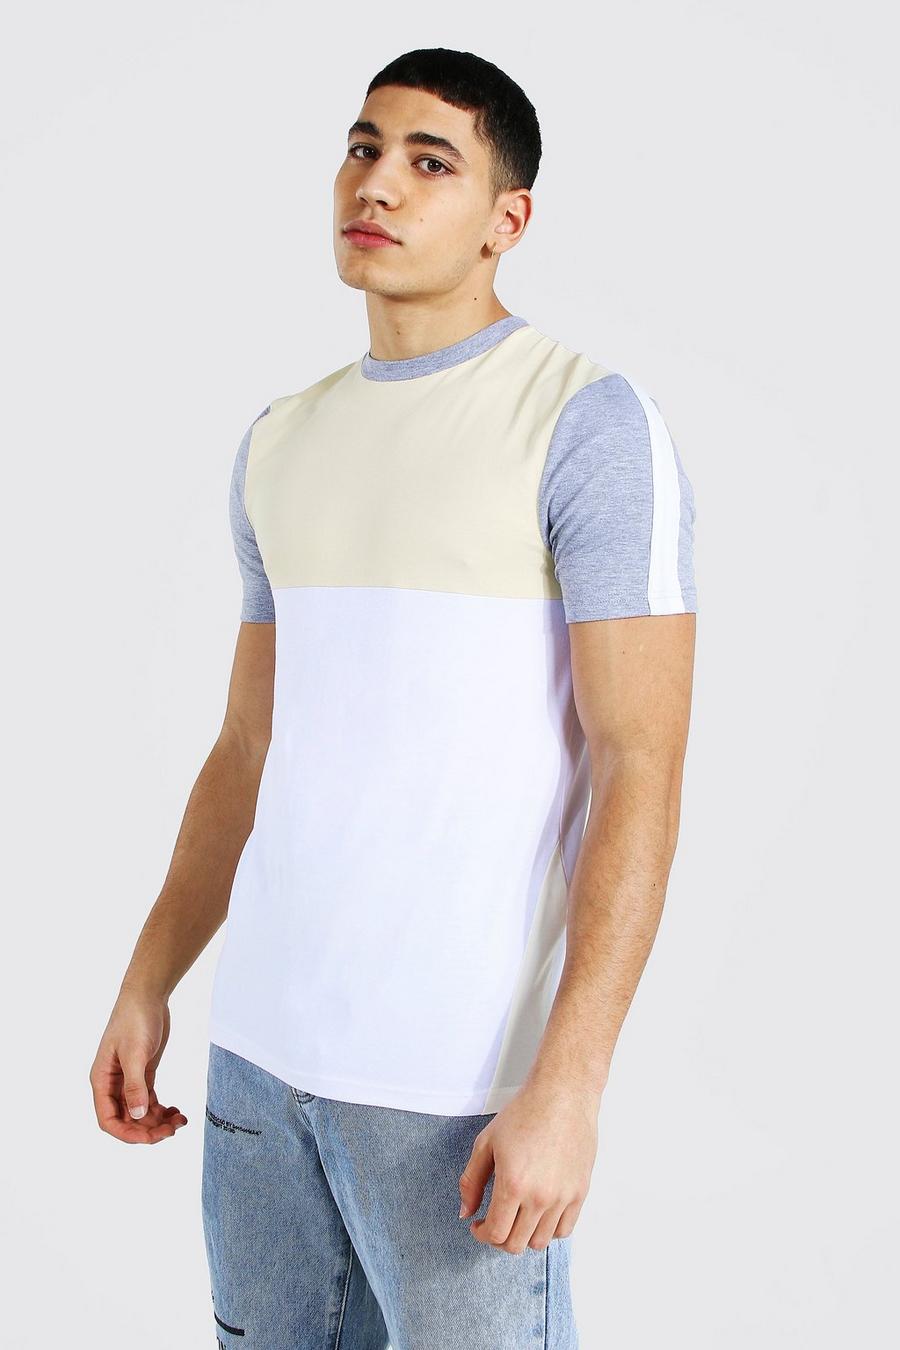 T-shirt sagomata a blocchi di colore, Sabbia image number 1